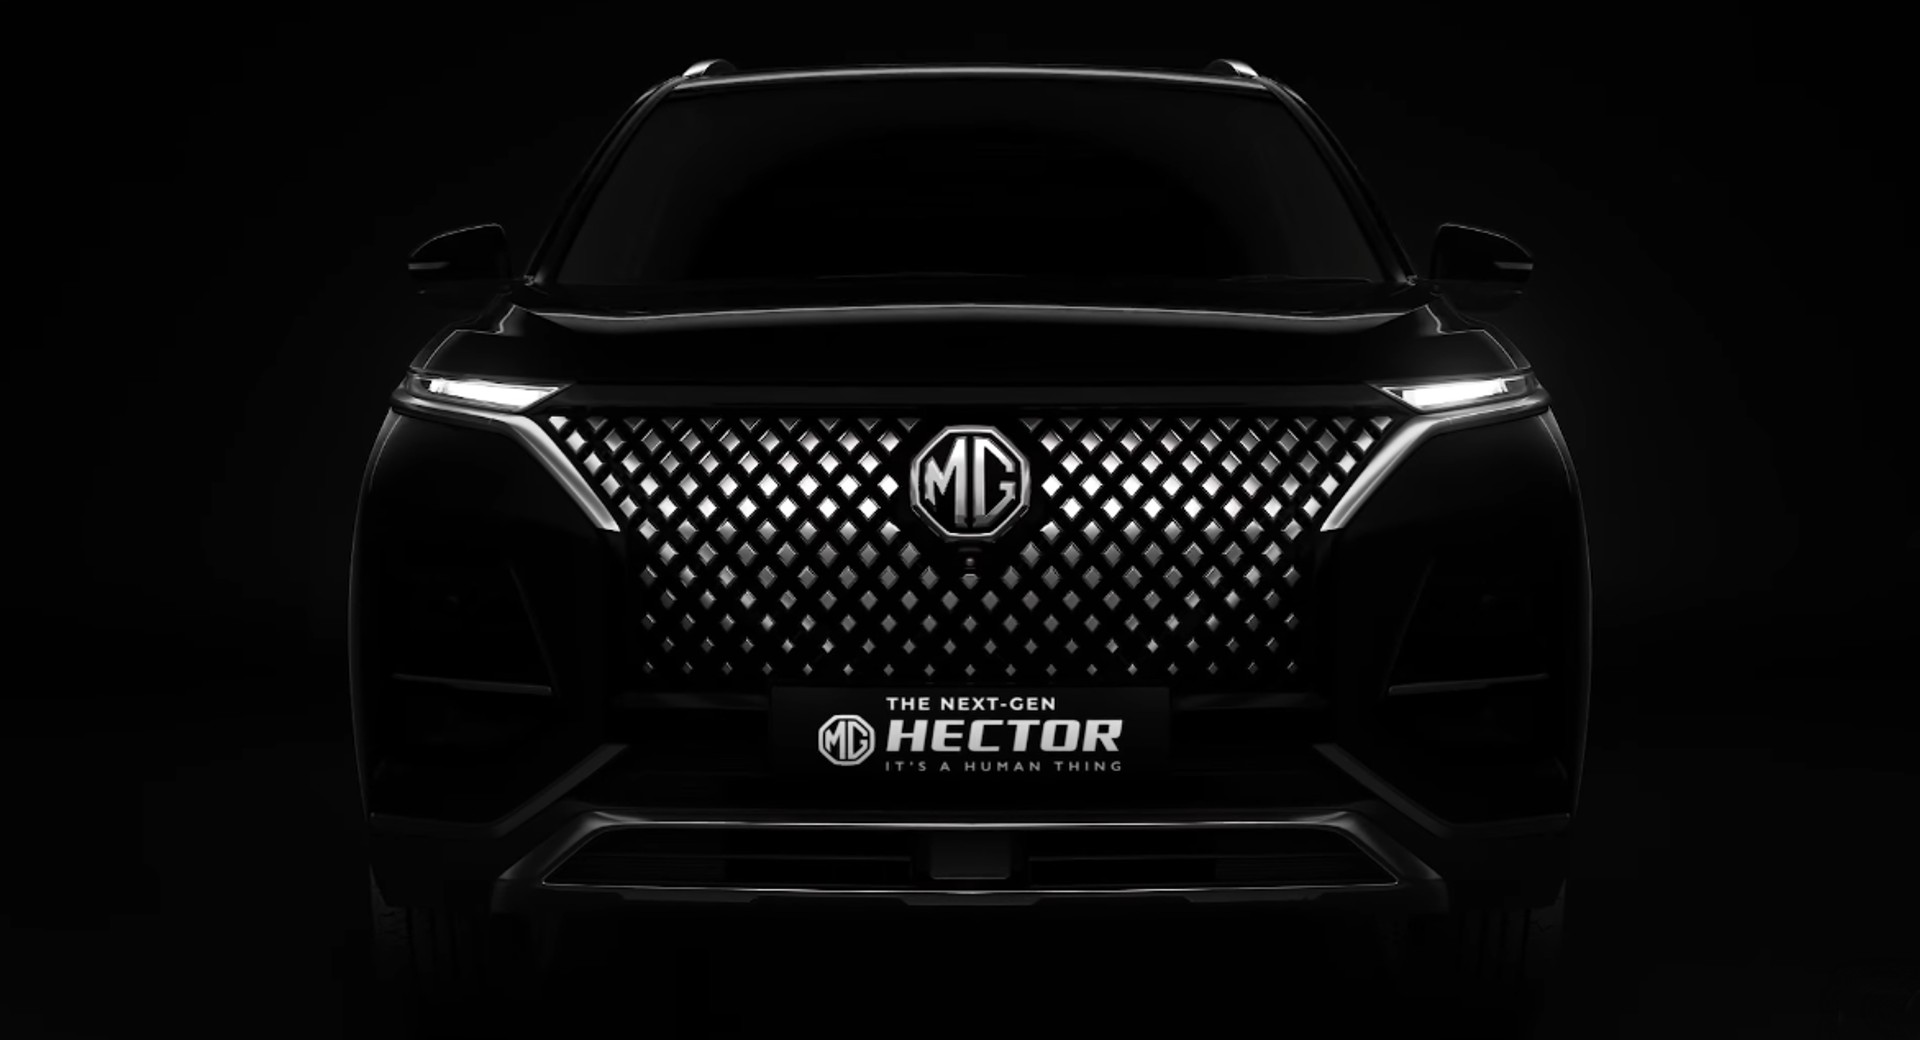 Inilah Bocoran Dari MG Hector Facelift Yang Akan Segera Diluncurkan Di India